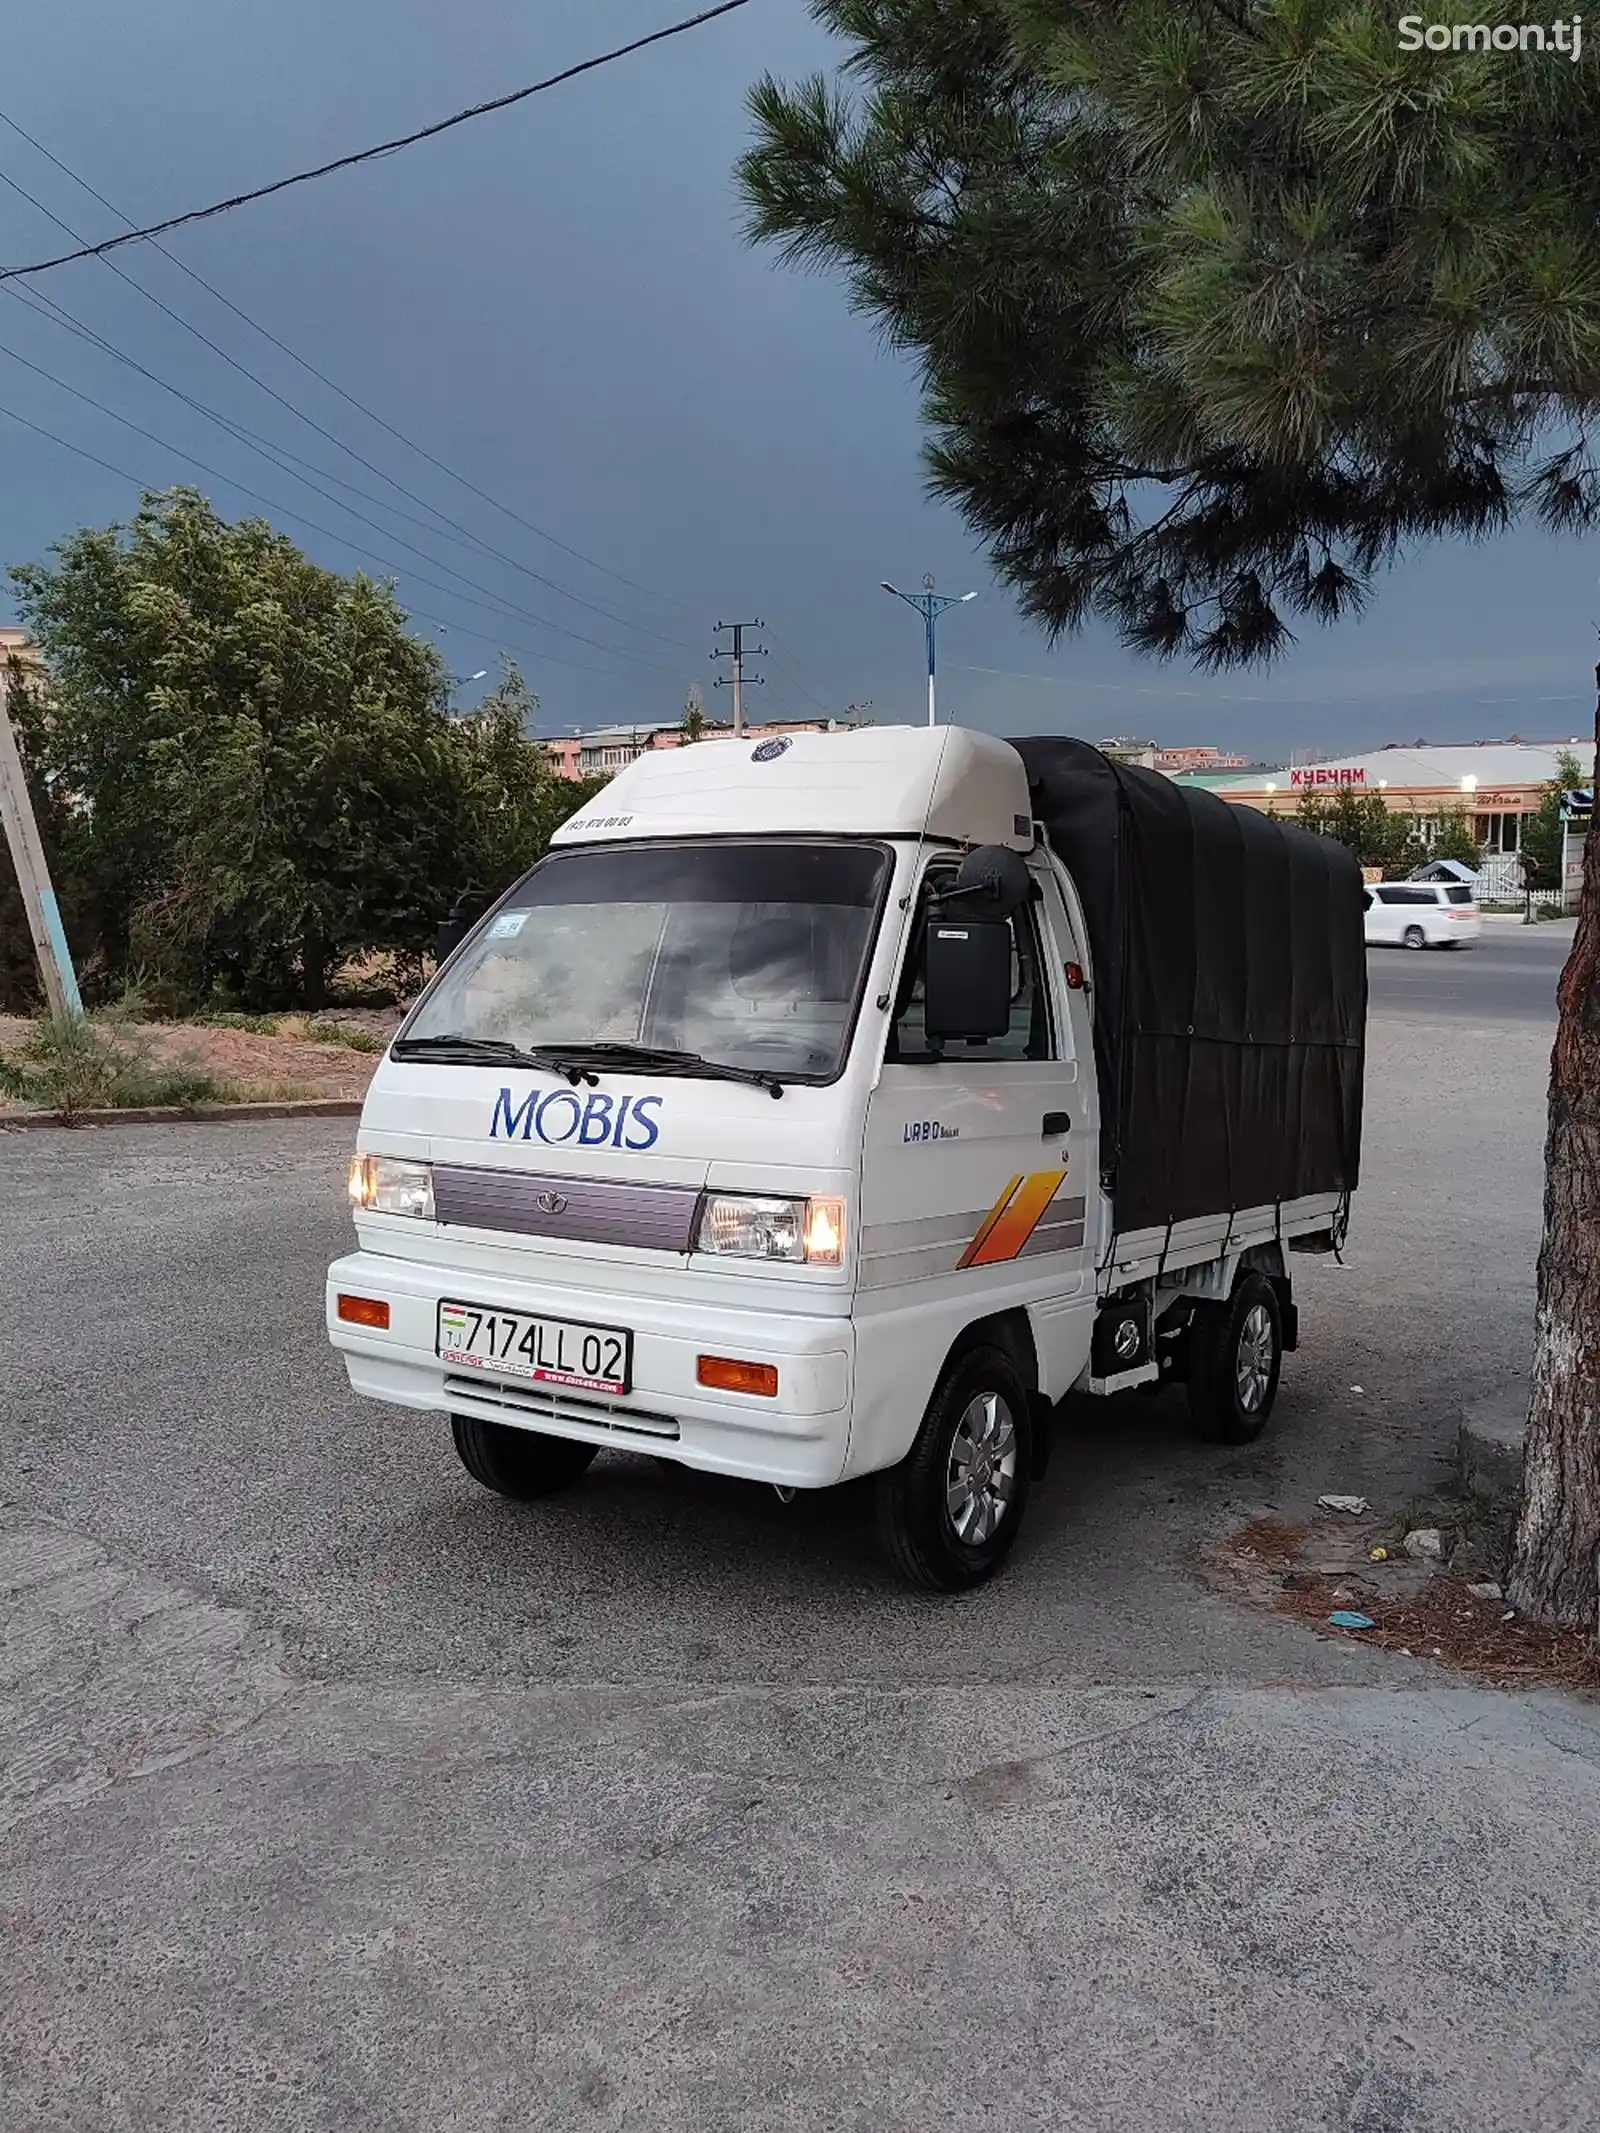 Бортовой автомобиль Daewoo Labo, 2013-2